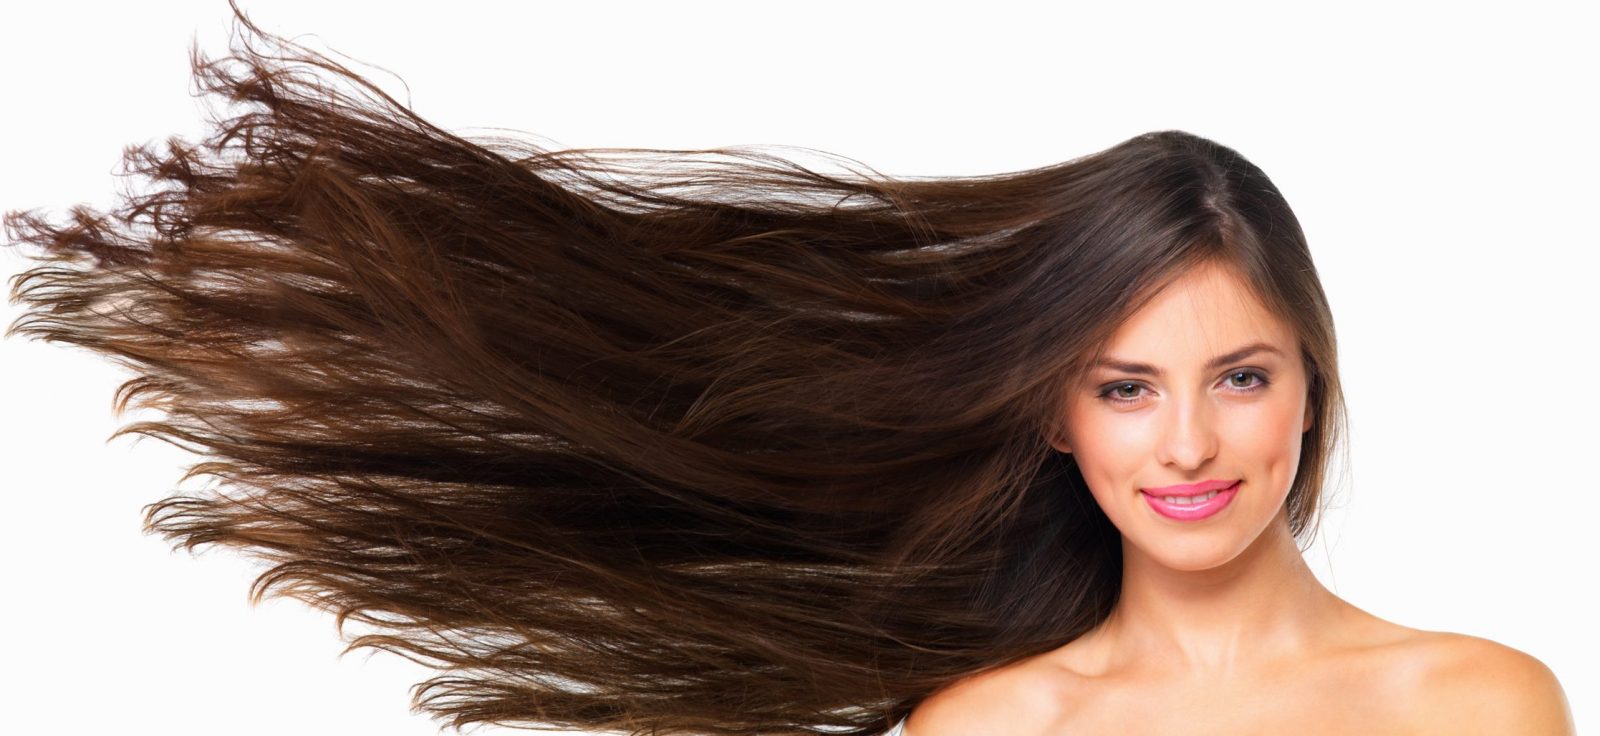 Sabudana Curd Castrol oil Helps Hair Growth: 